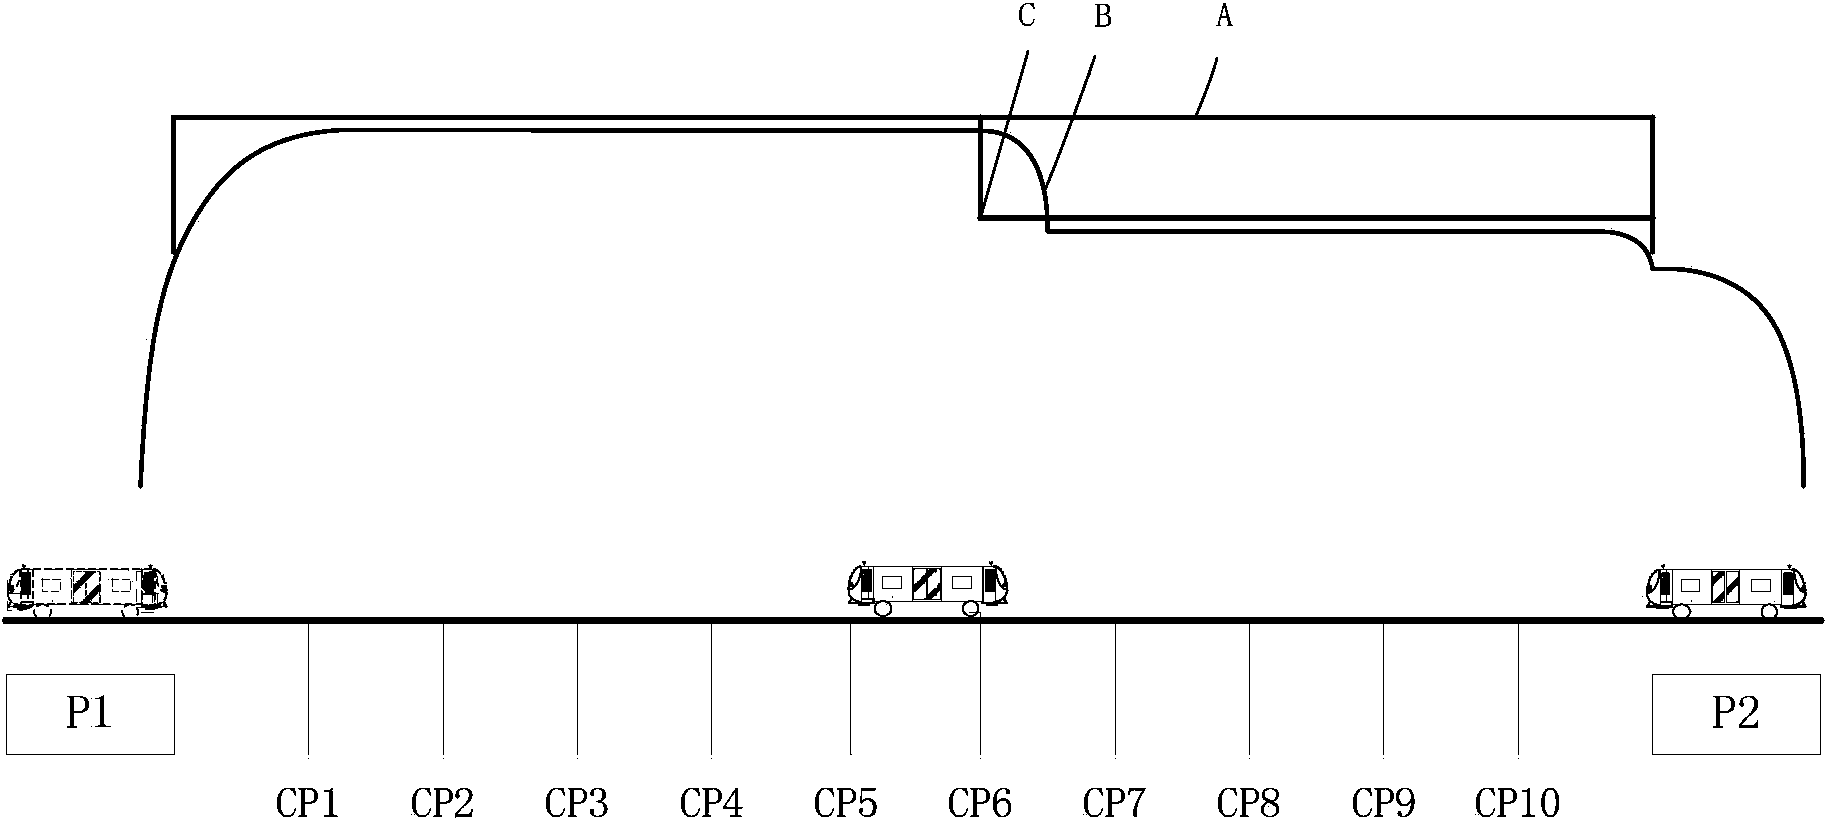 Method for adjusting train operation curve